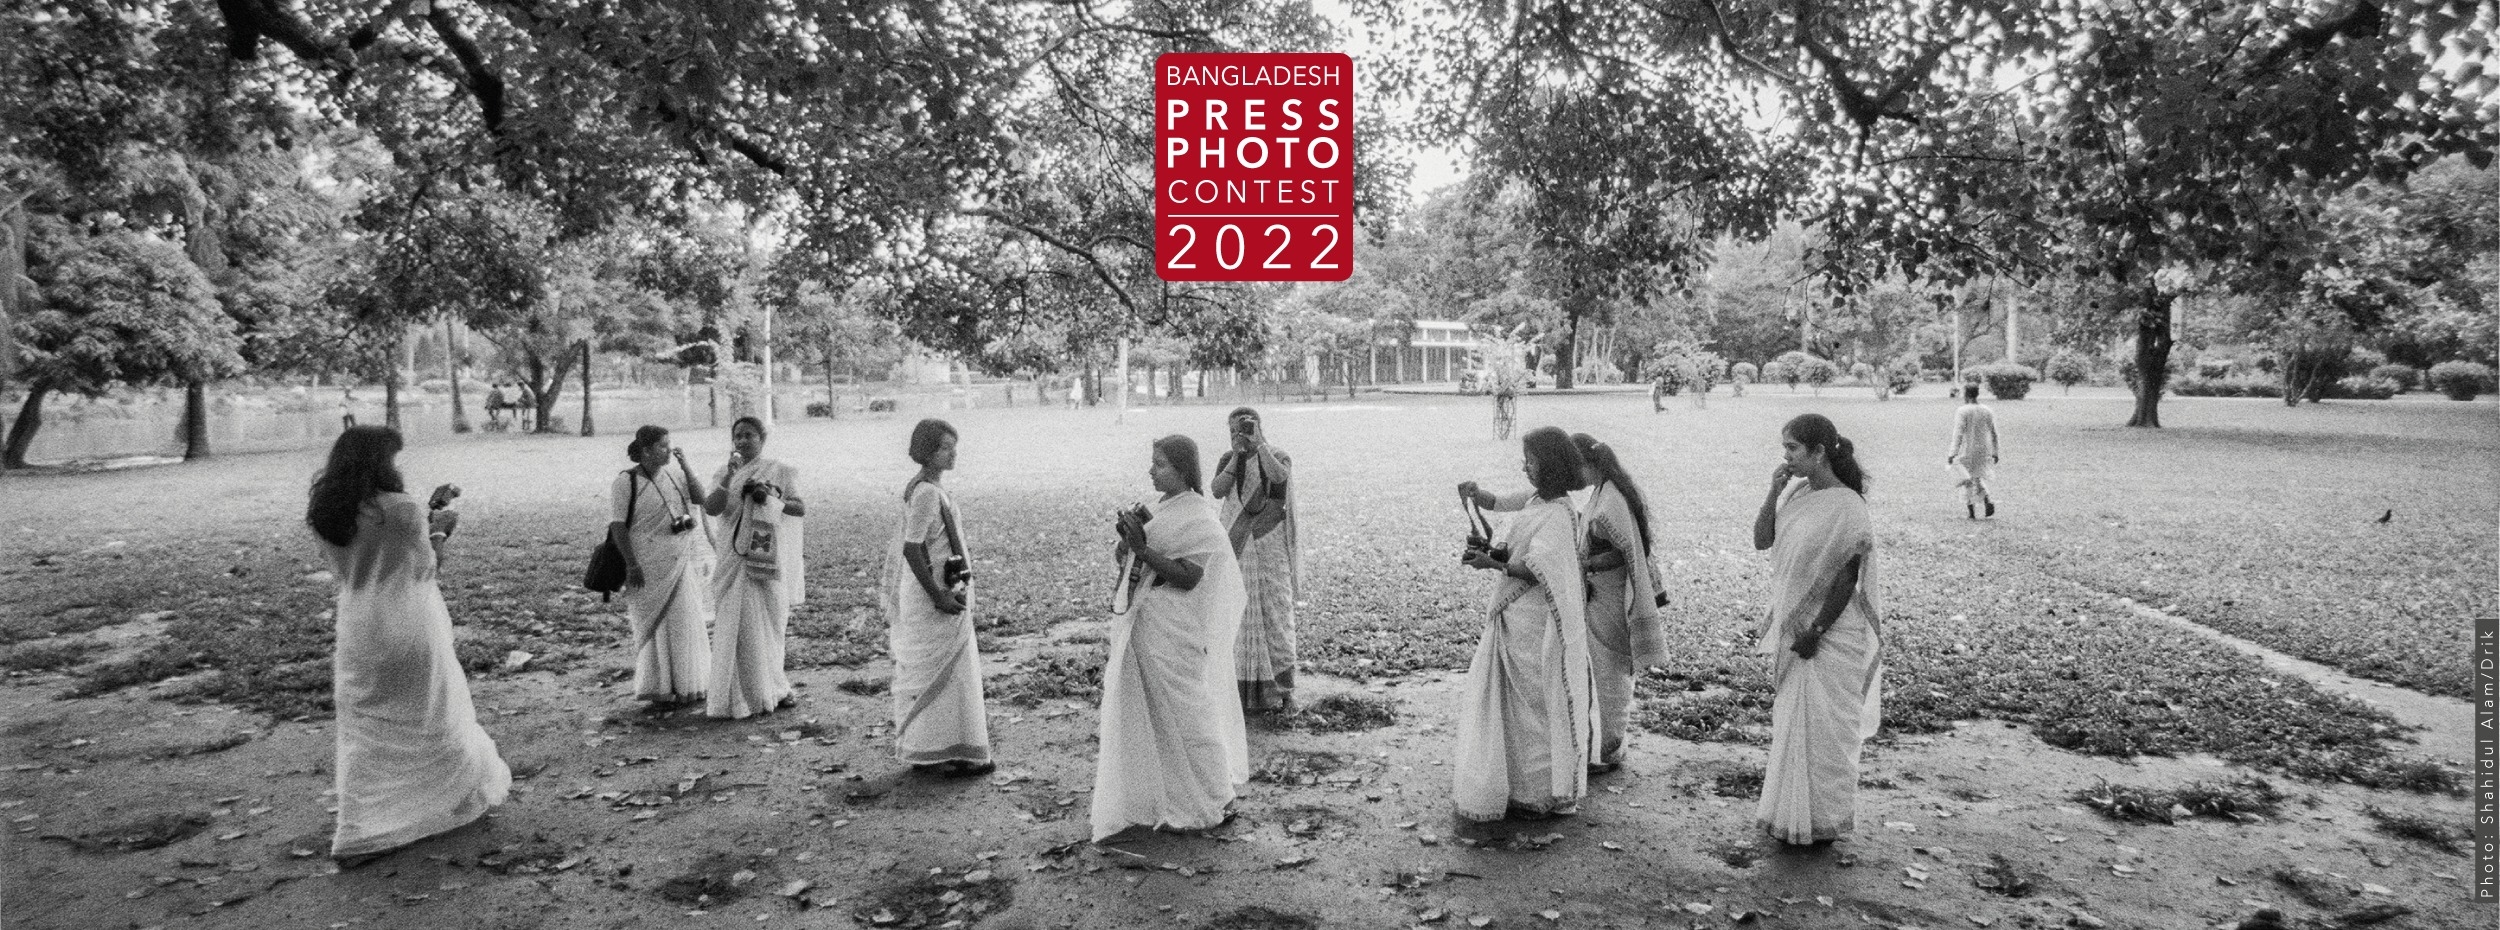 BANGLADESH PRESS PHOTO AWARD 2022